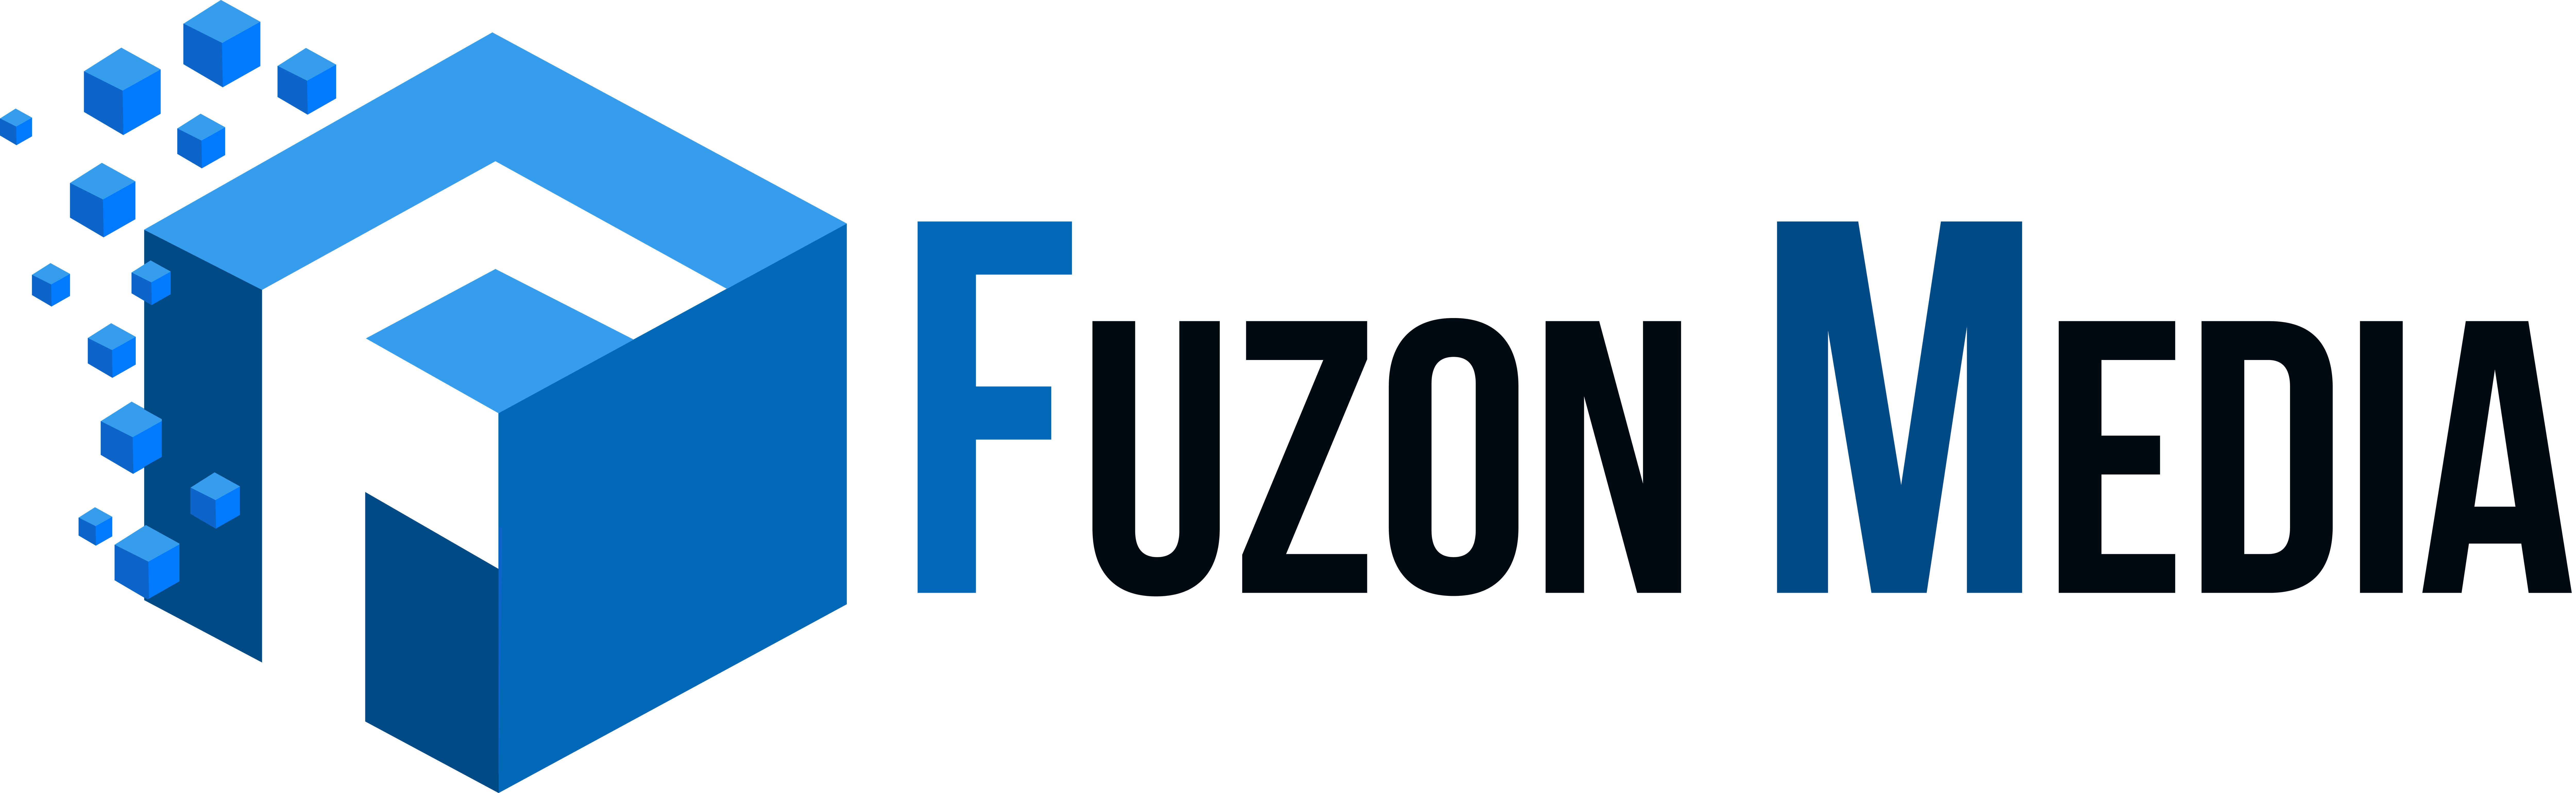 Fuzonmedia-logo